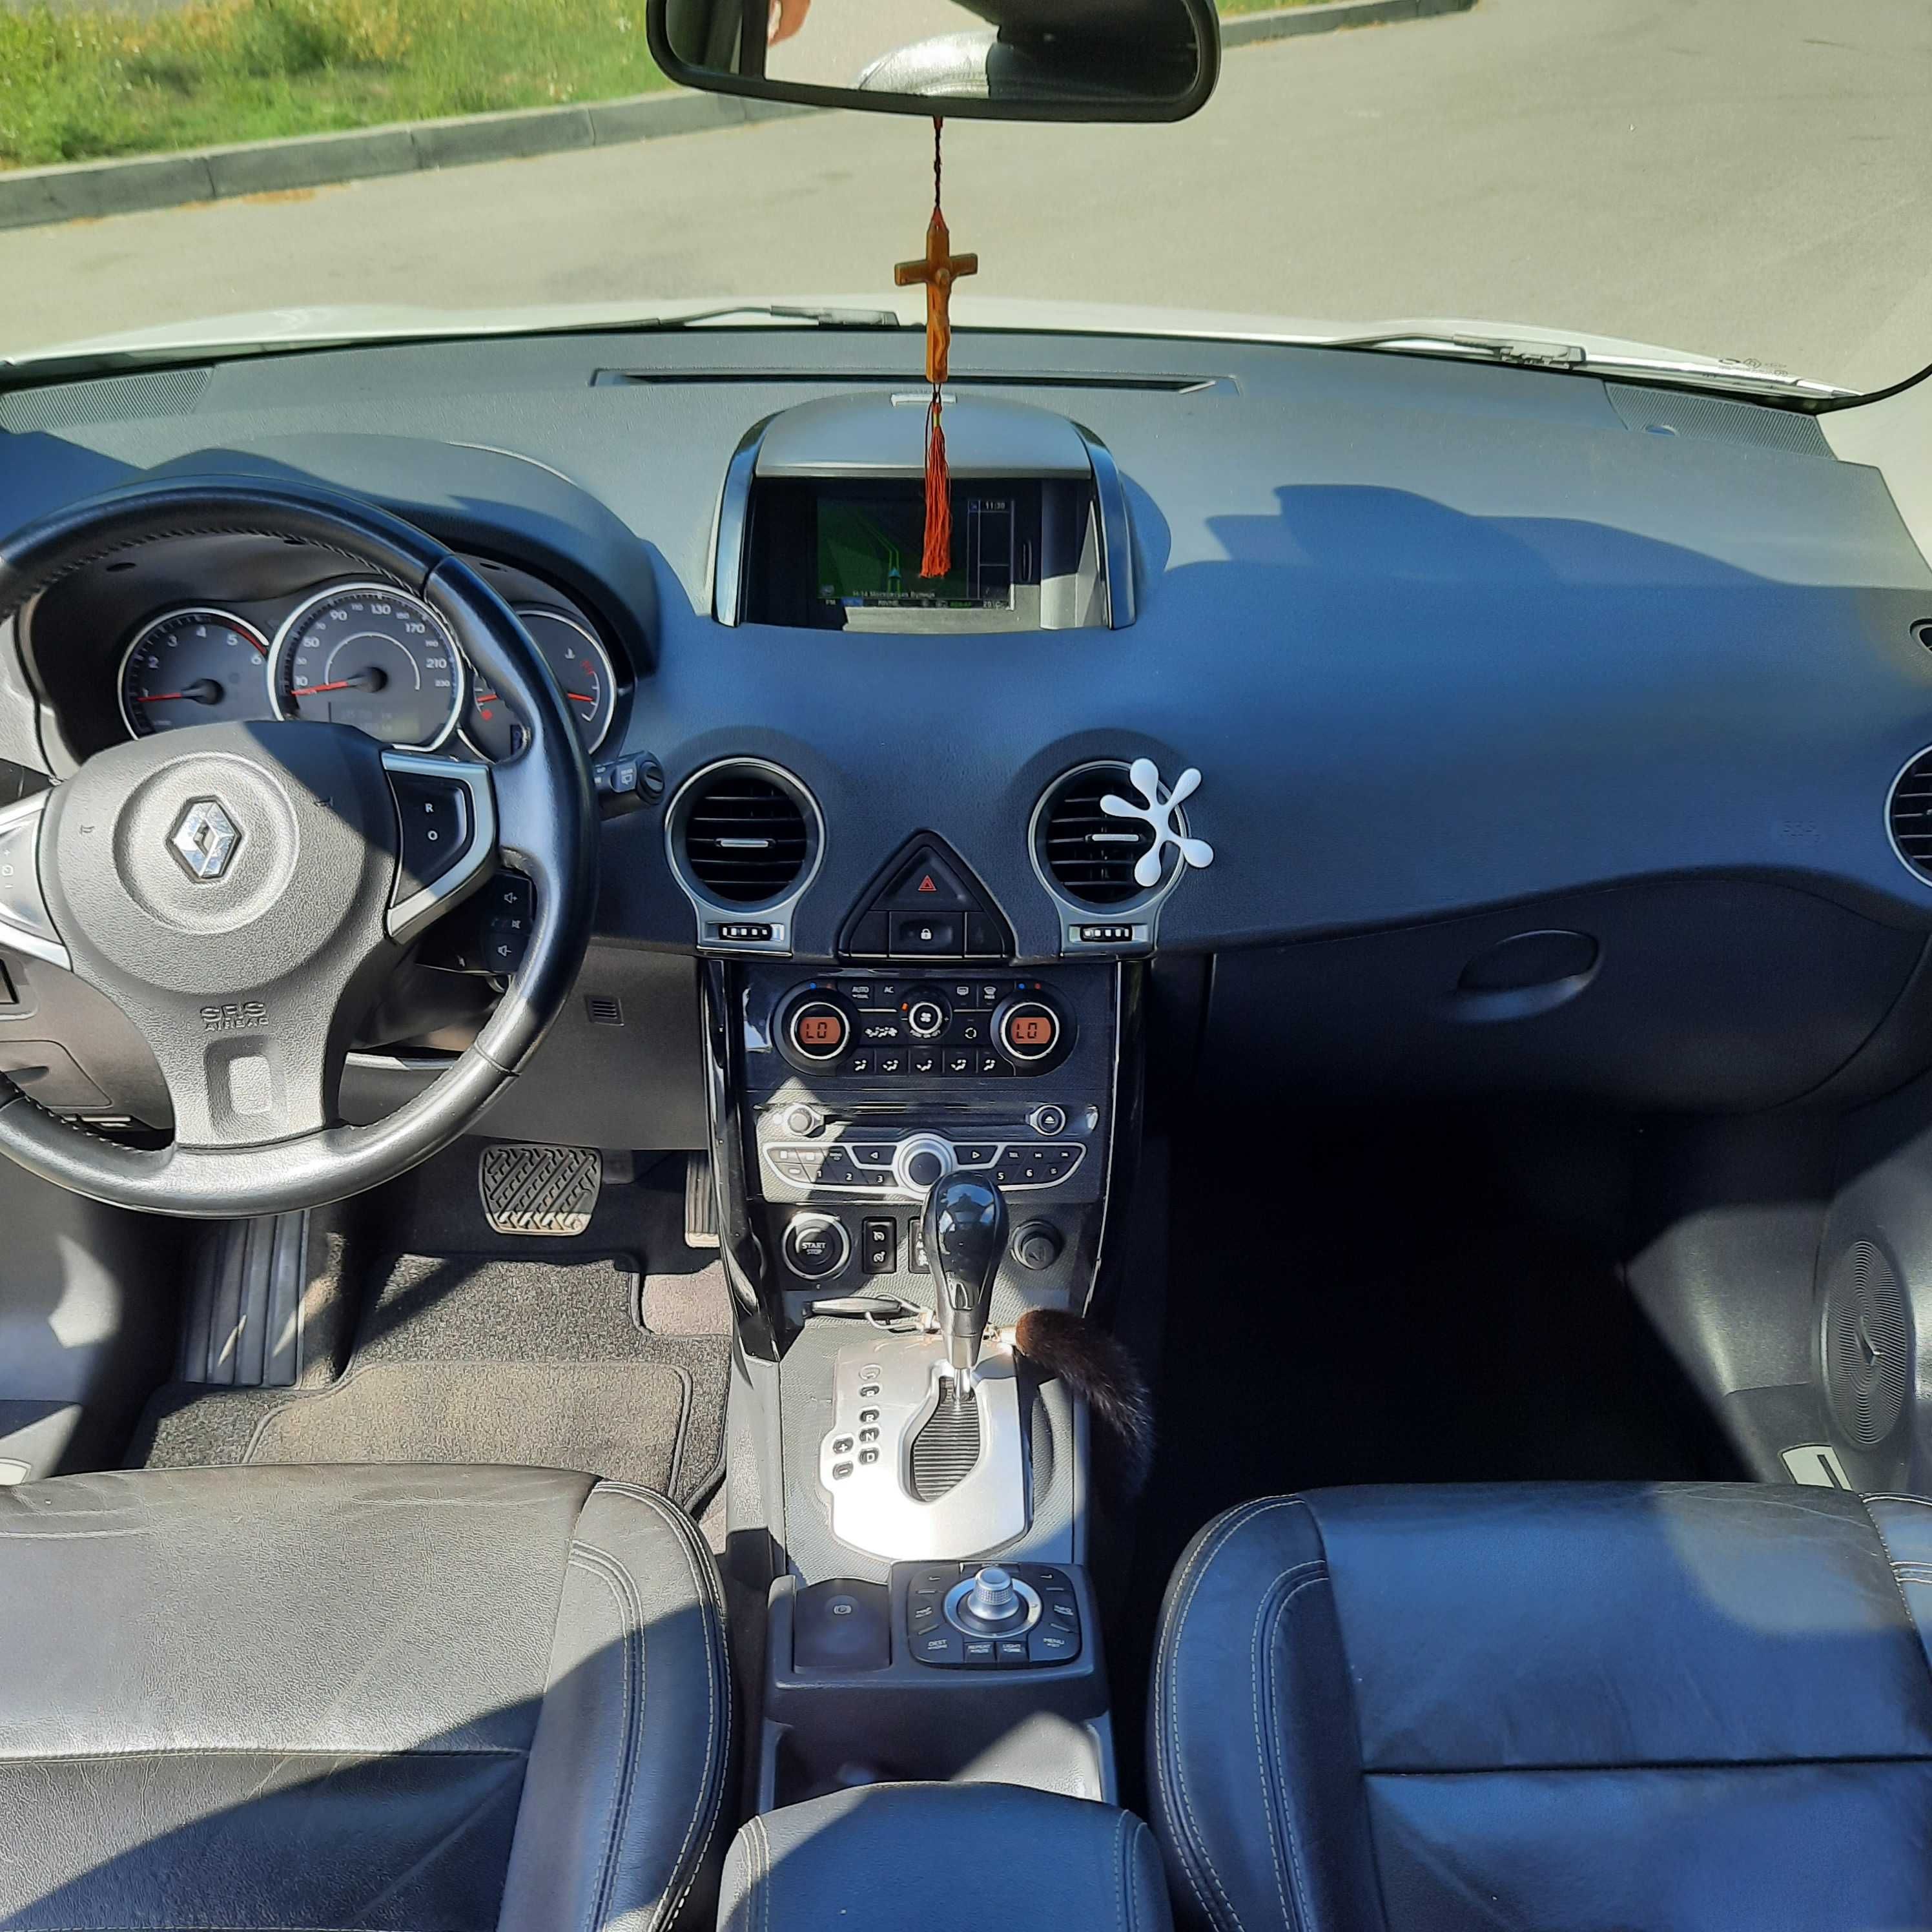 Автомобиль Renault  koleos  4x4 Bose 2012 года